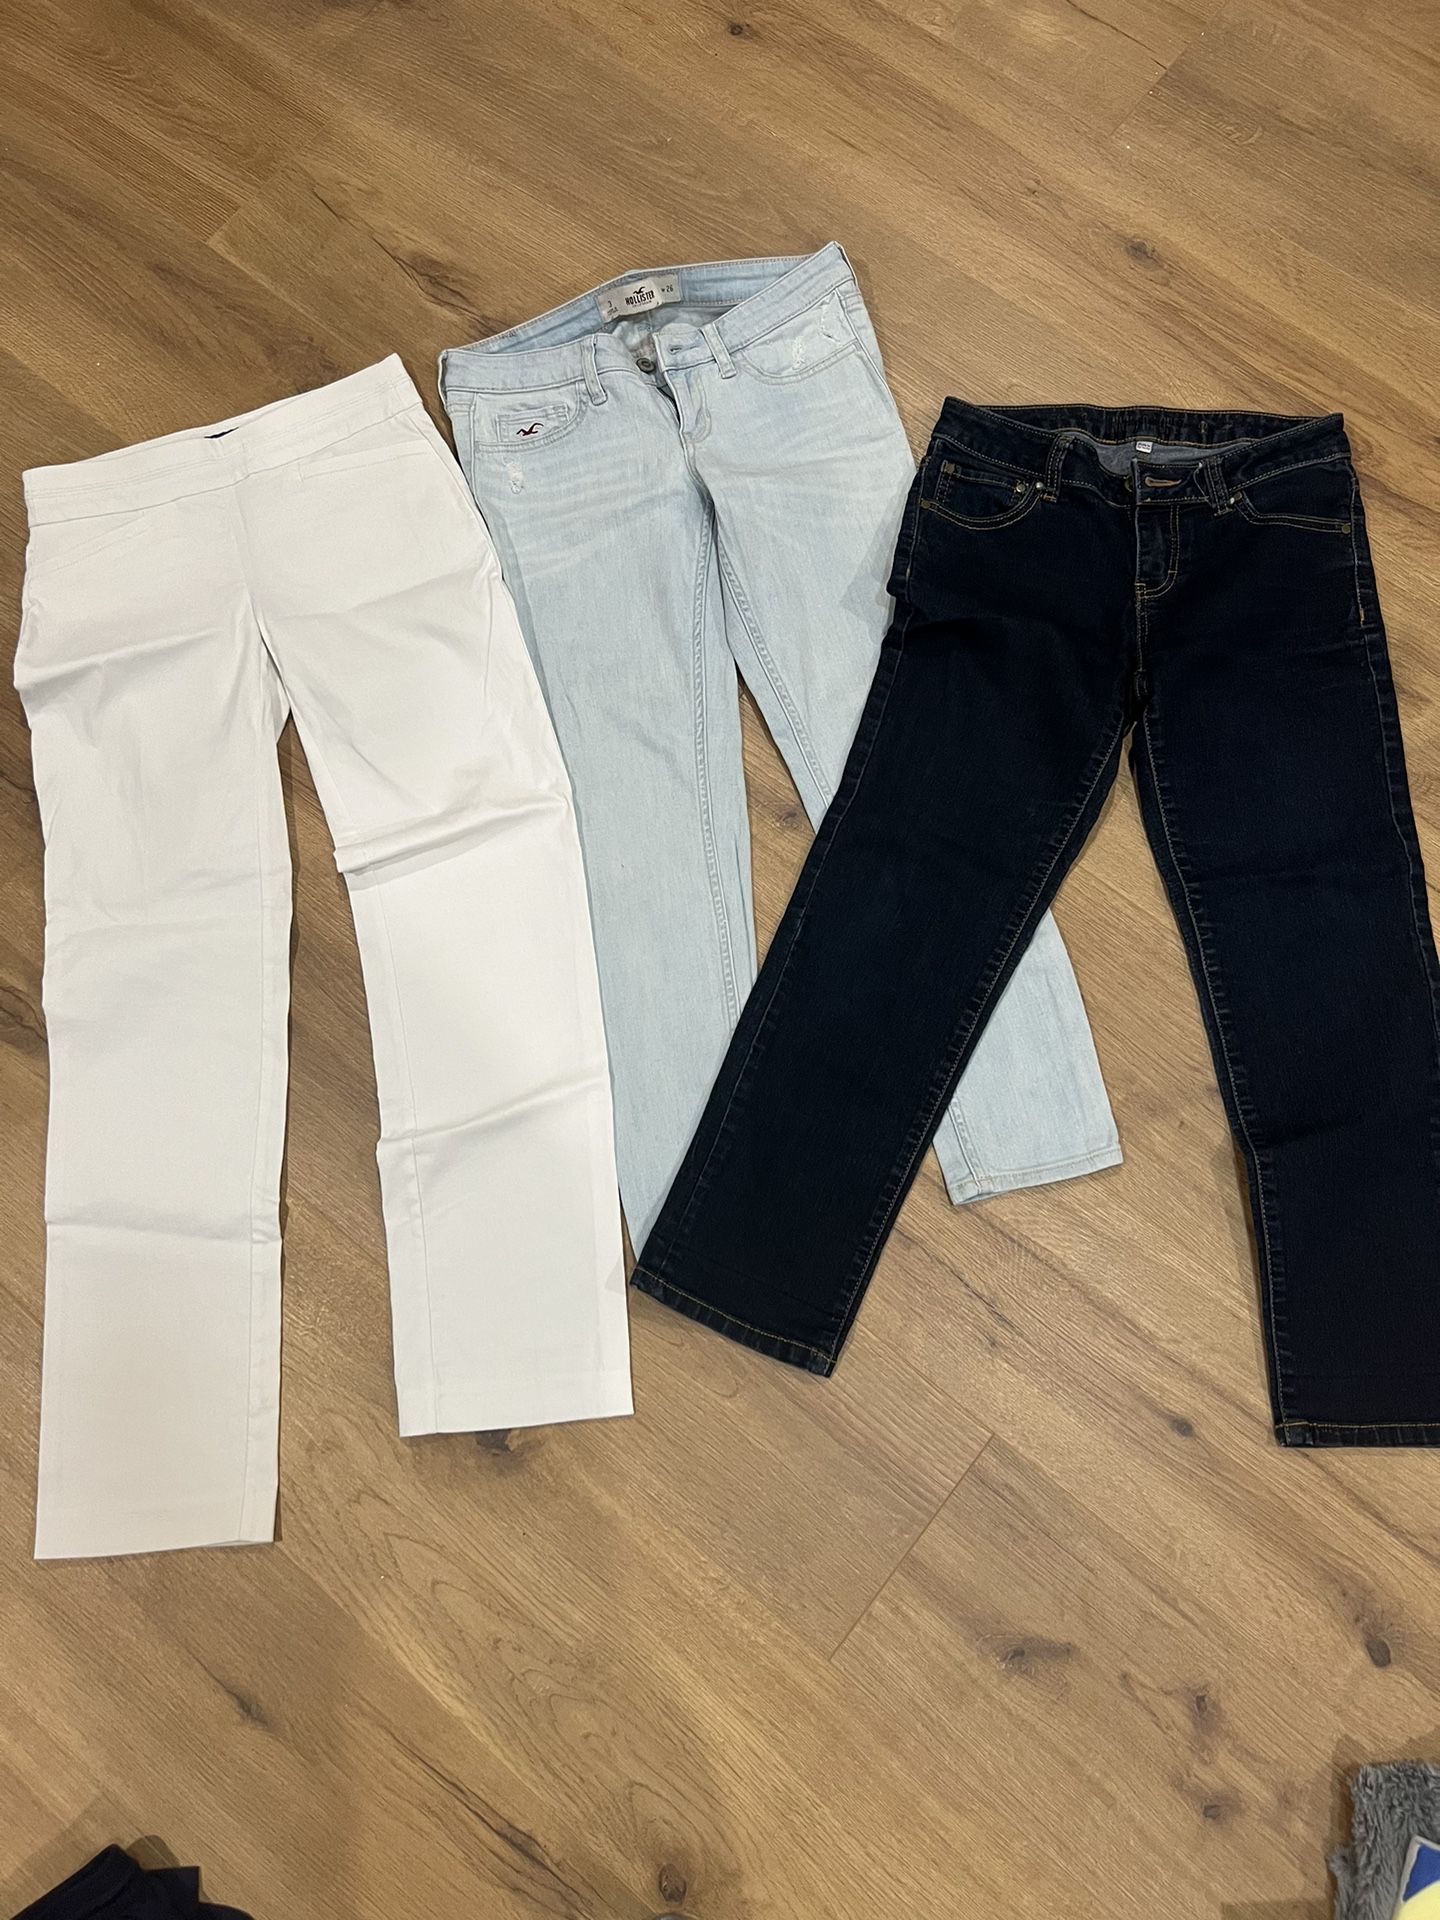 Jeans/pants